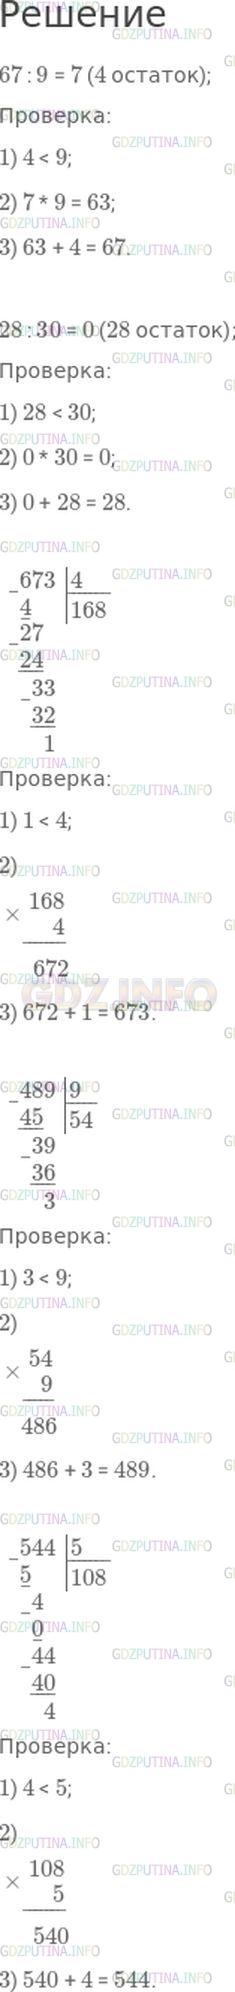 Фото решения 1: Номер №272, Часть 1 из ГДЗ по Математике 4 класс: Моро М.И. г.